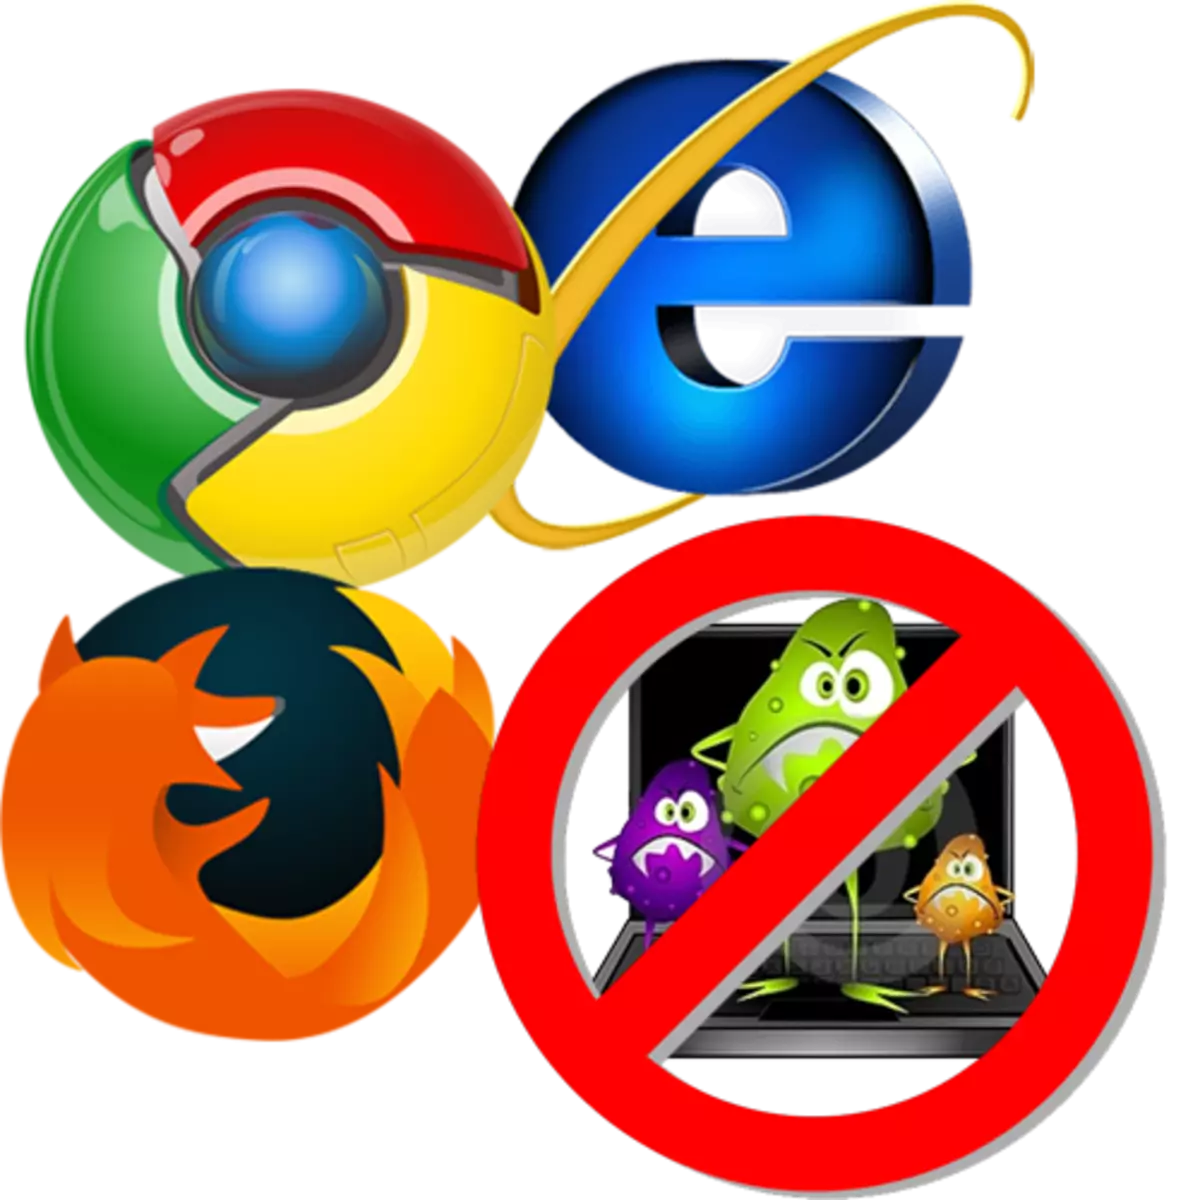 Virus am Browser erofhuelen